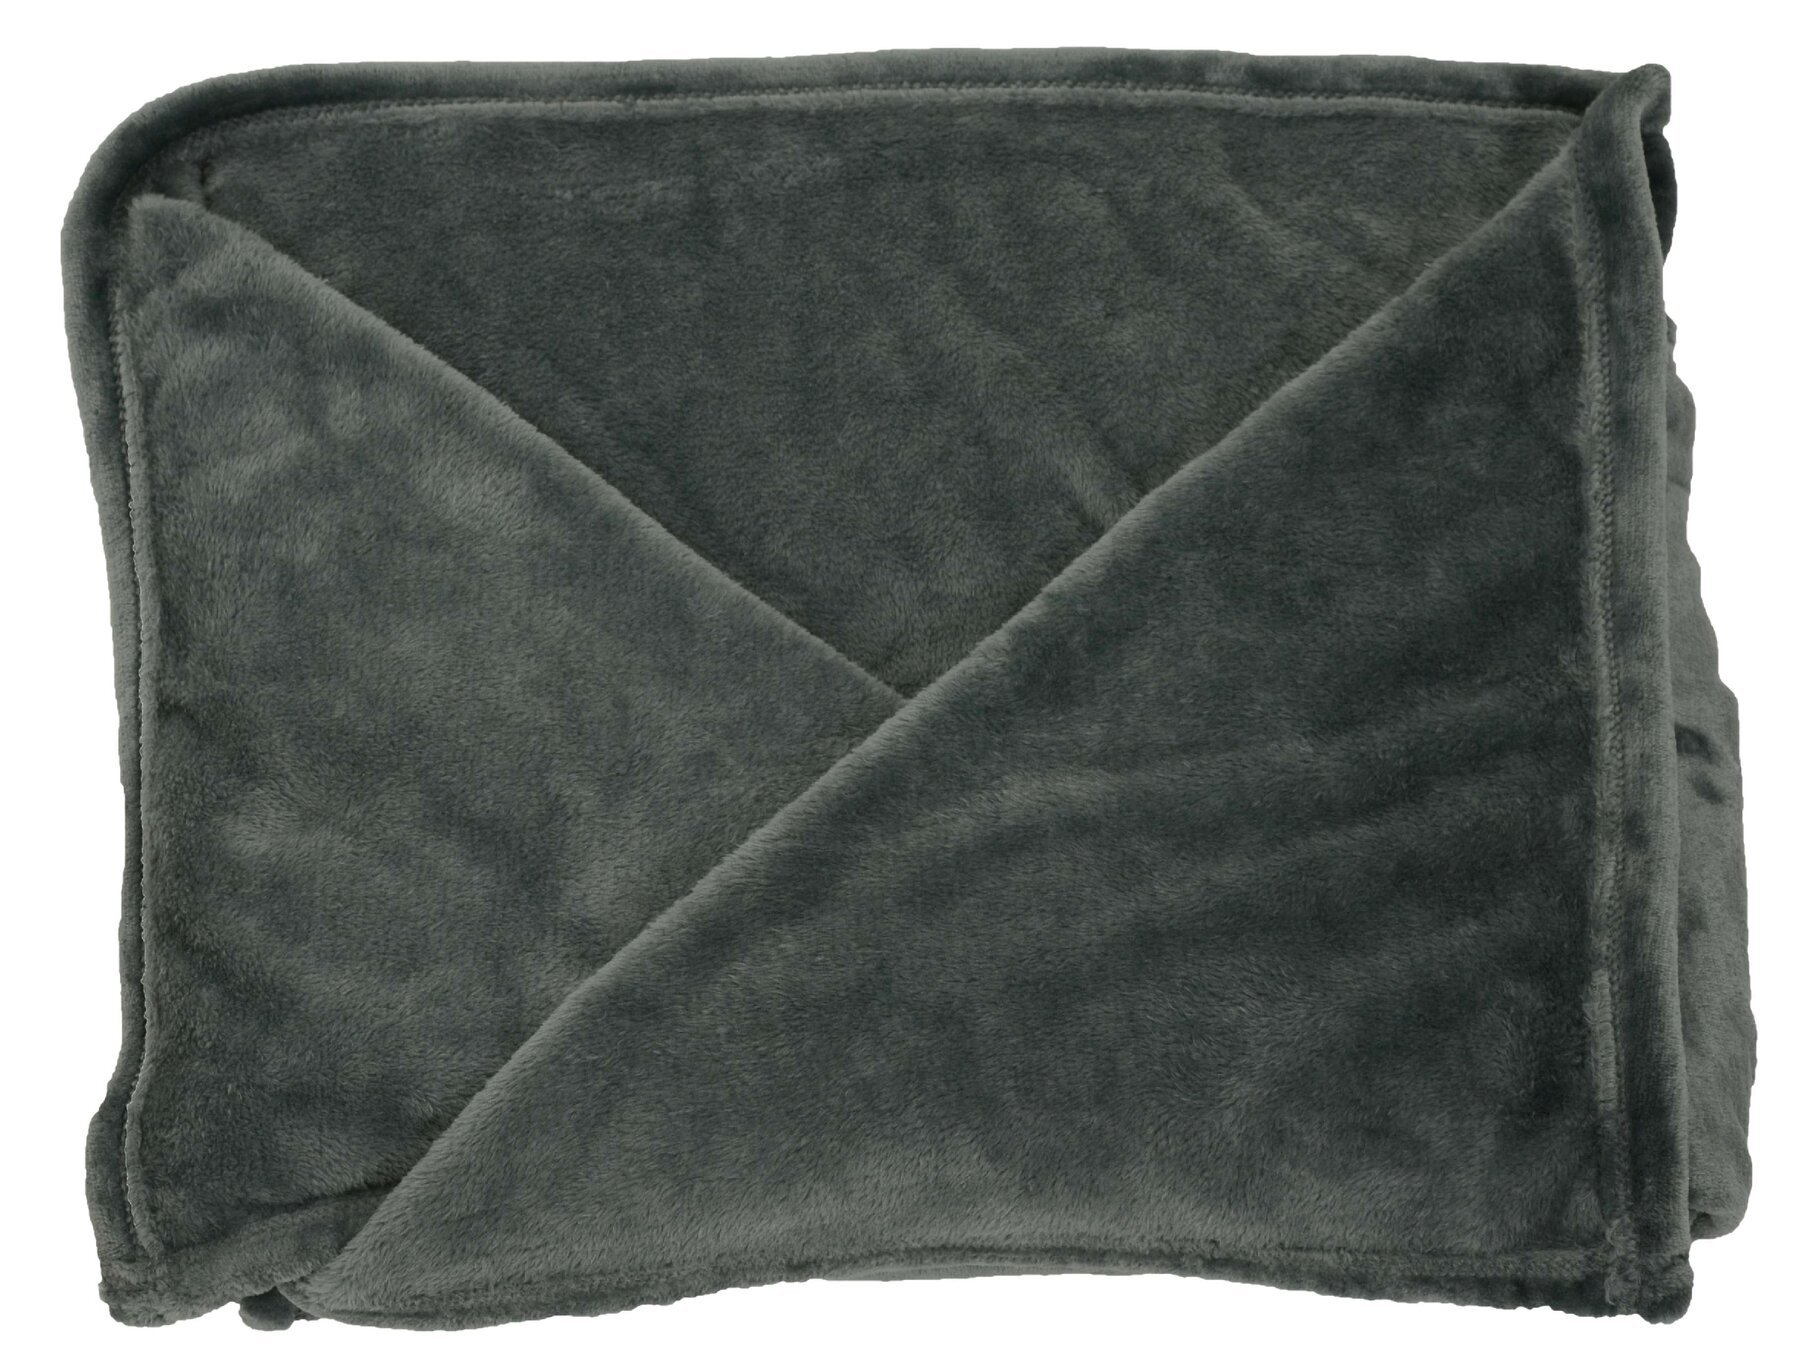 Snuggle fleece blanket with sleeves grey 150x180cm